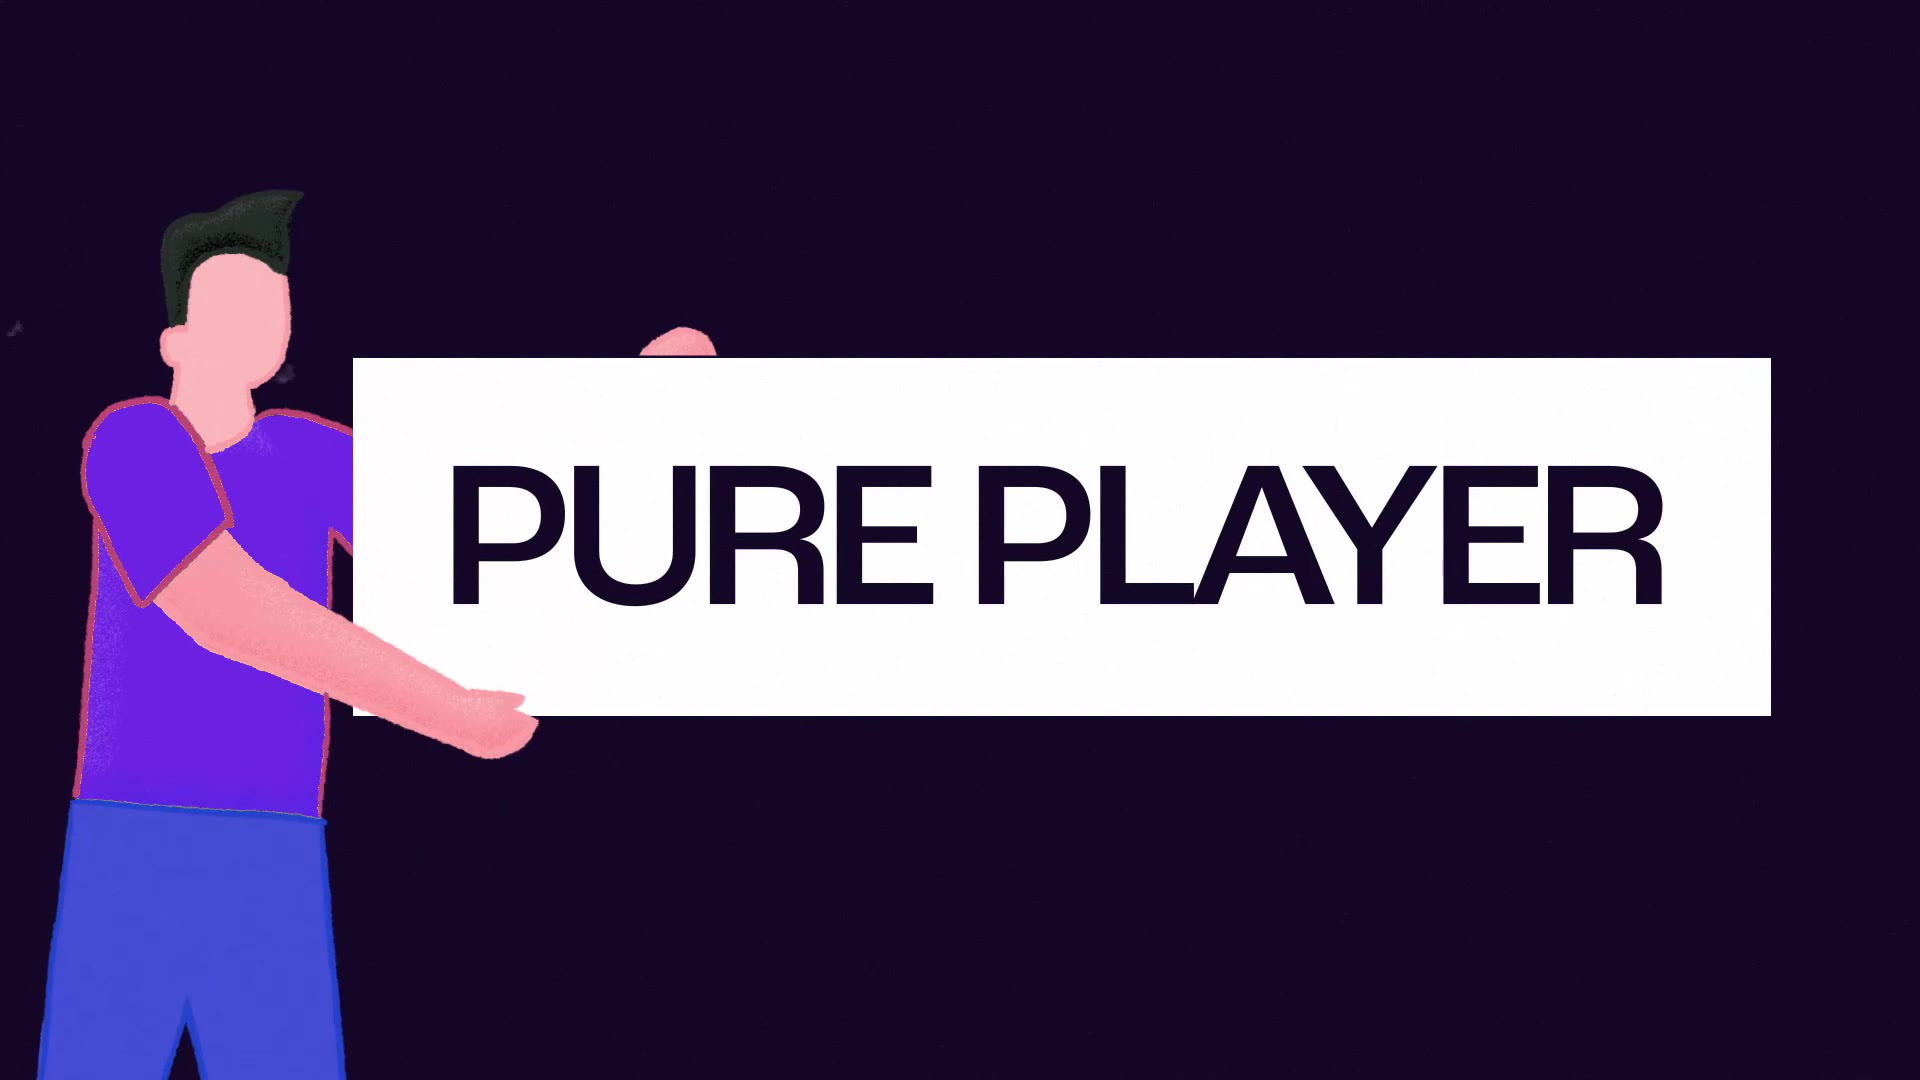 Pure player: qu'est-ce que c'est et qui sont les meilleurs ?